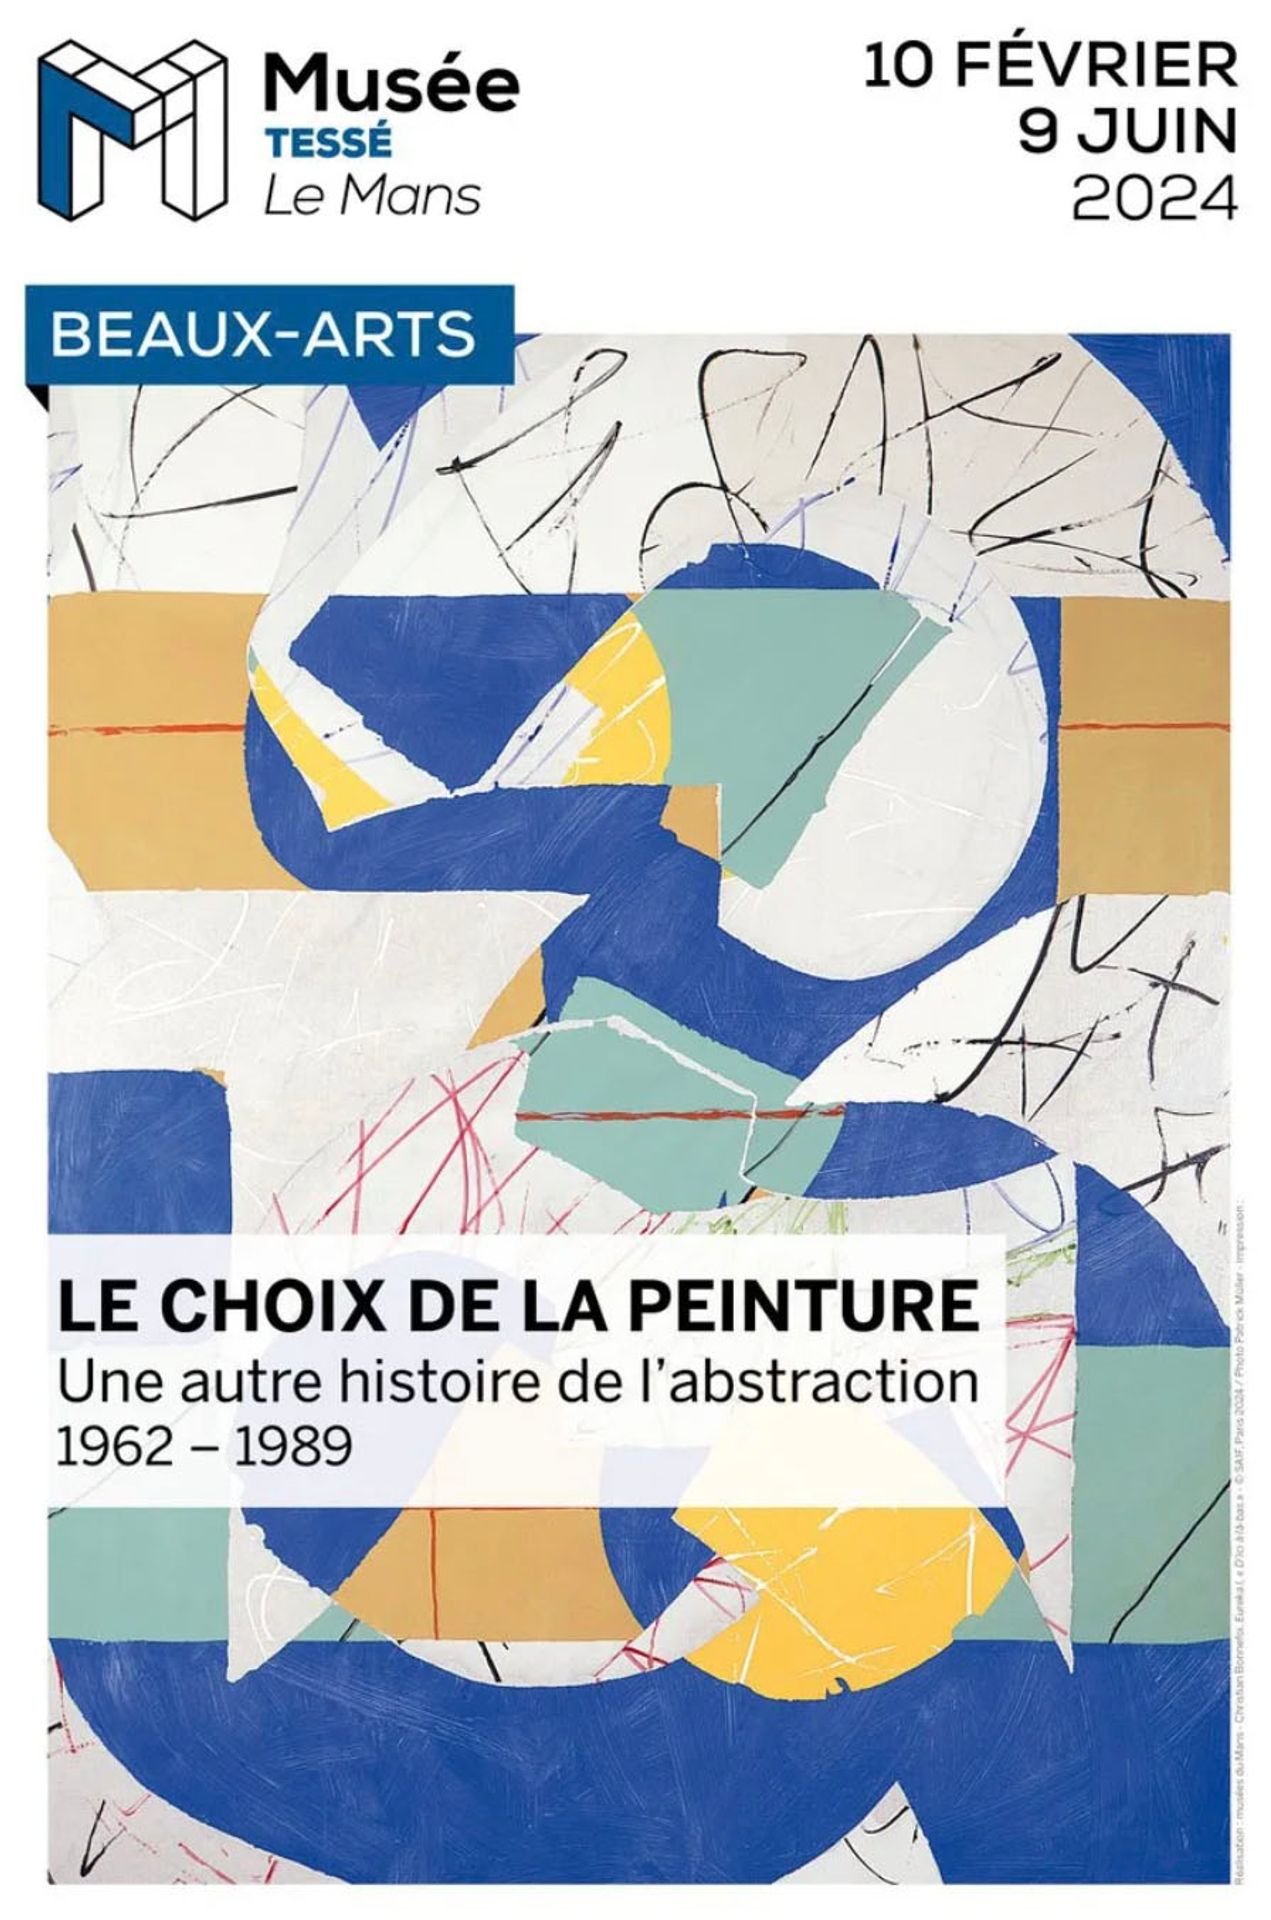 Le choix de la peinture Une autre histoire de l'abstraction en France, 1962-1989